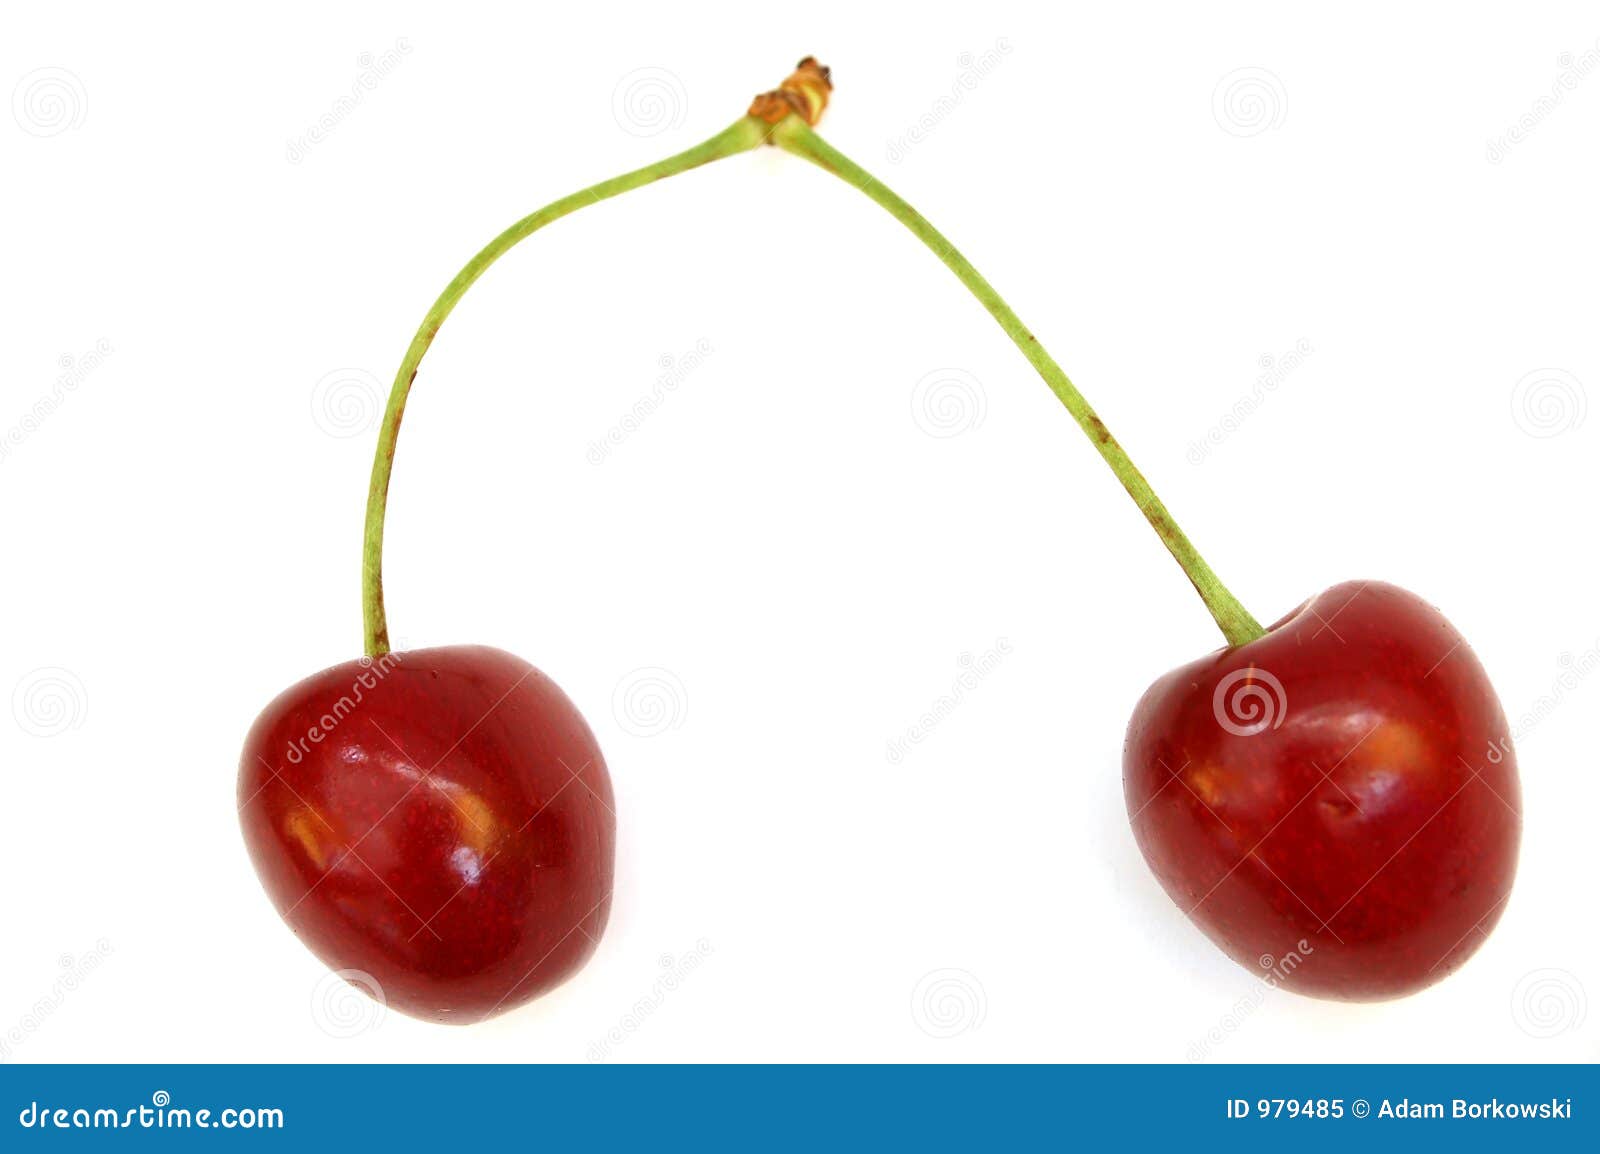 Cherry #2 stock image. Image of cherry, fresh, cherrie - 979485